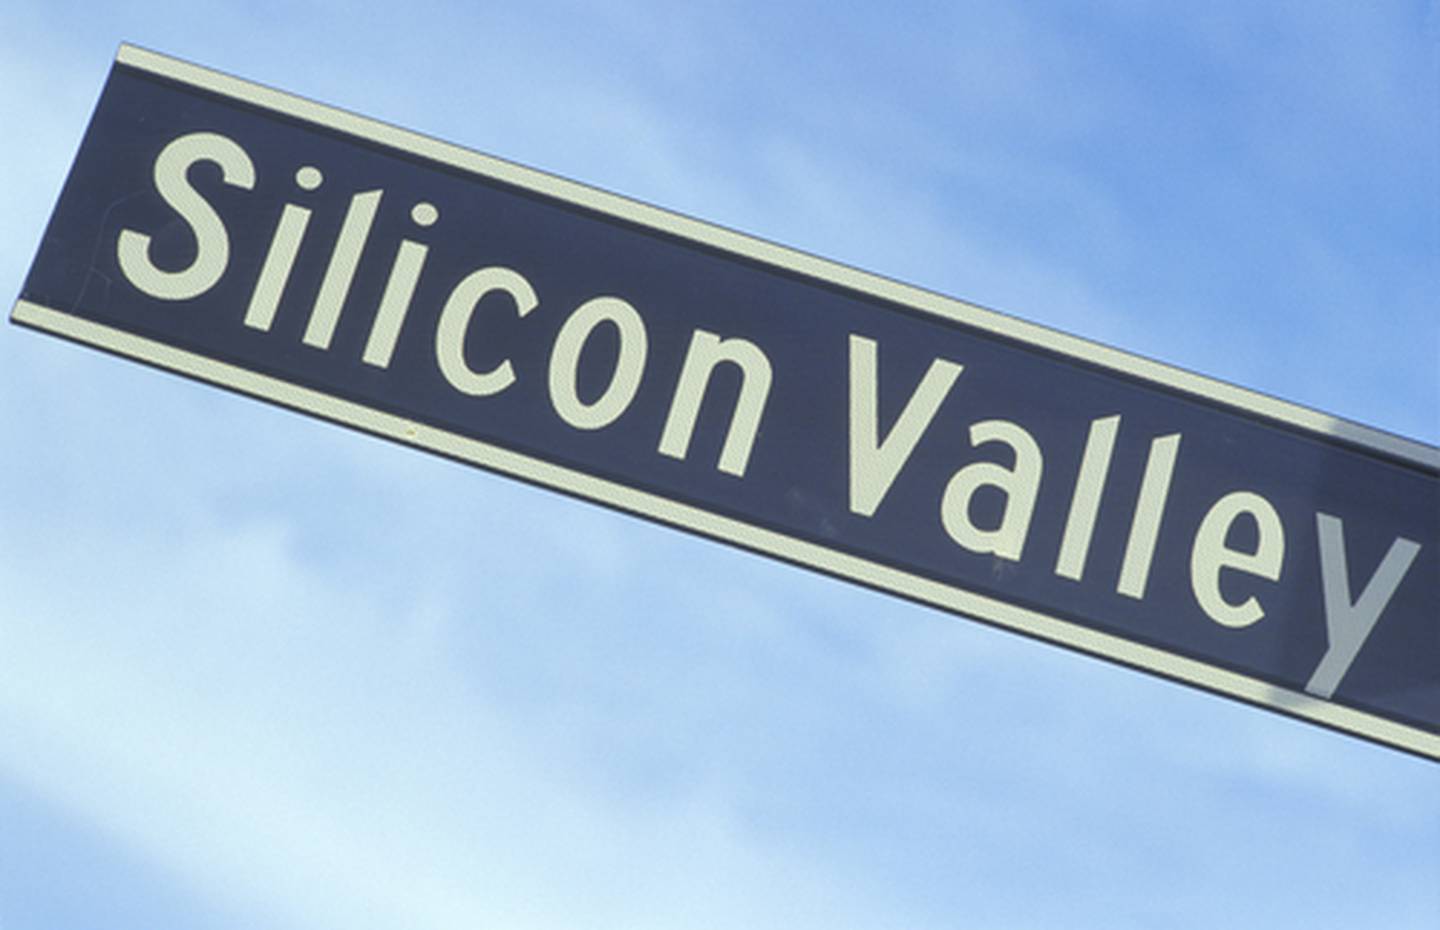 El multimillonario inversionista tecnológico Balaji Srinivasan se hizo una reputación como cruzado antigubernamental en el 2013, cuando dio un discurso acerca de Silicon Valley como la “salida final” de los Estados Unidos, al que llamó la “Microsoft de las naciones”.